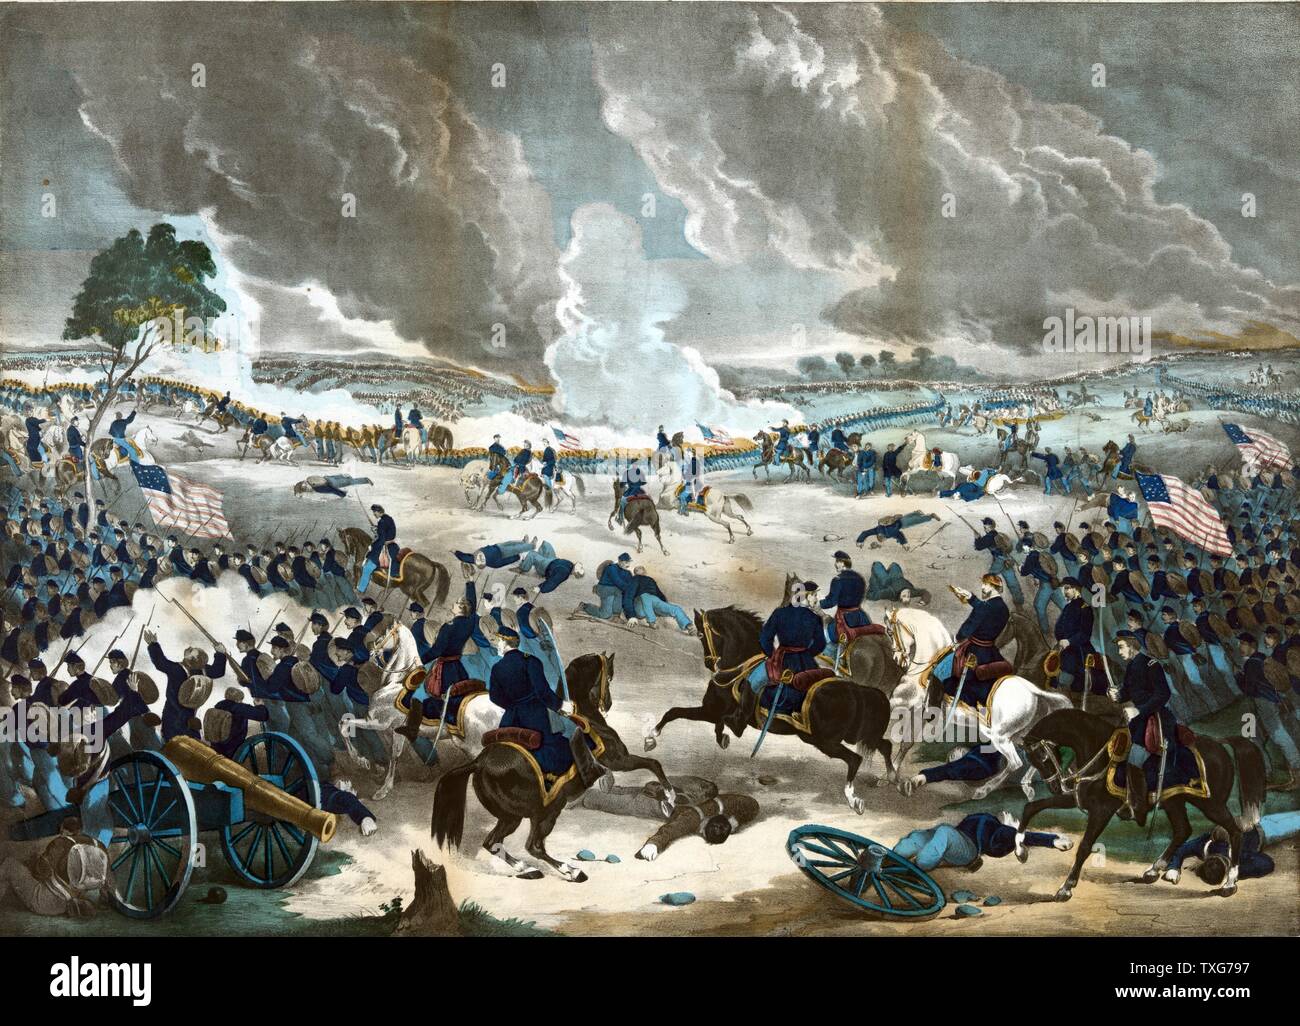 Amerikanischer Bürgerkrieg 1861-1865: Schlacht von Gettysburg 1-3 Juli letzten Invasion 1863 General Lee's des Nordens. Union Infanterie Vorrücken von rechts Lithographie Stockfoto